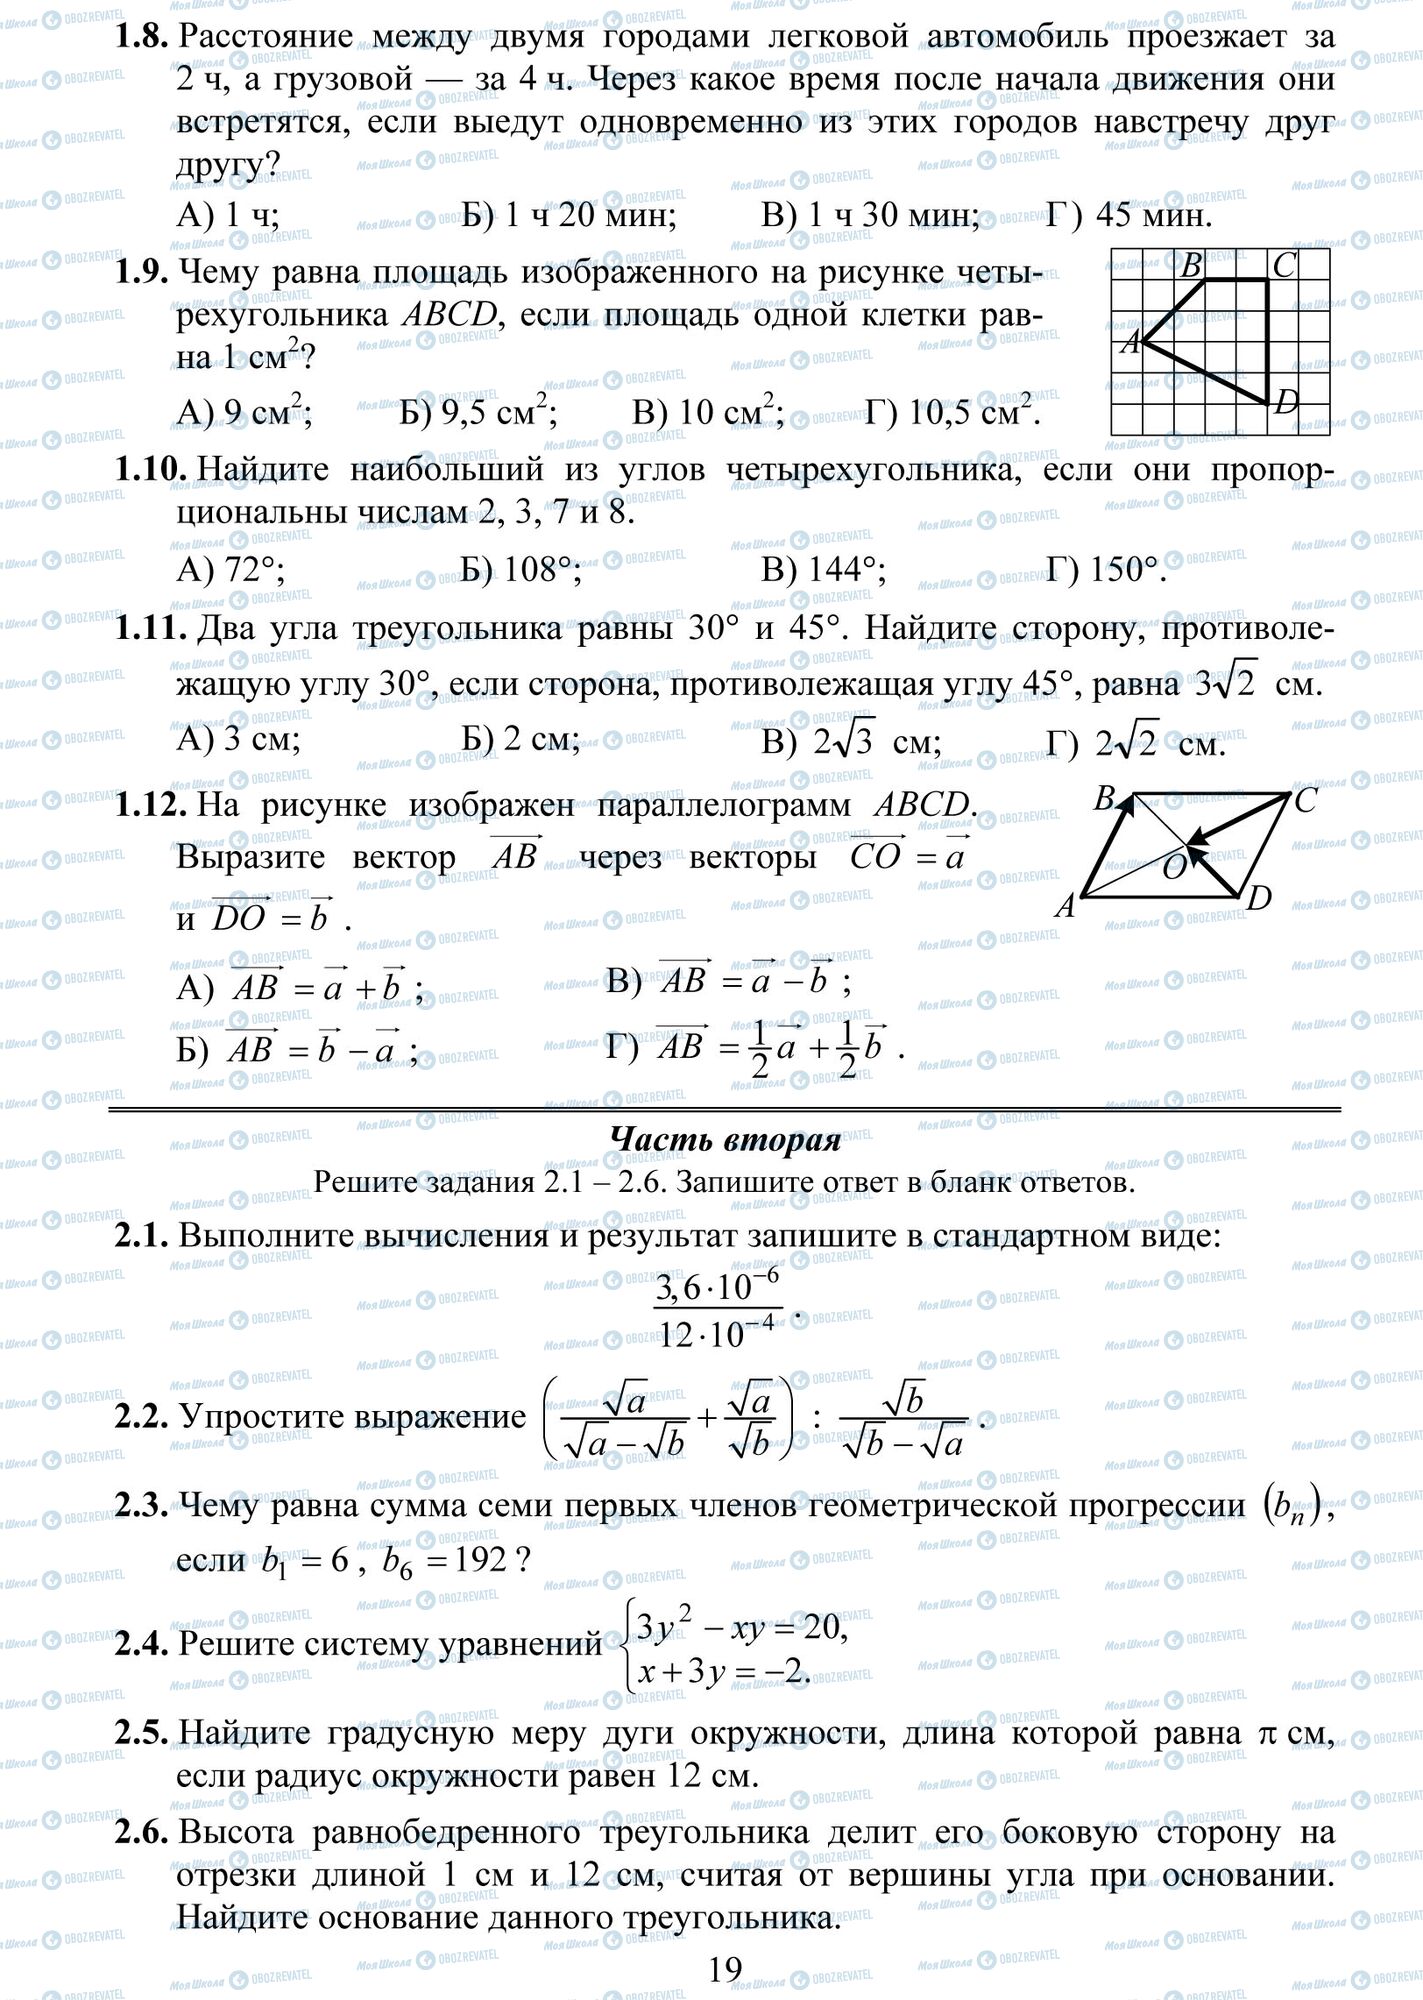 ДПА Математика 9 класс страница 8--12